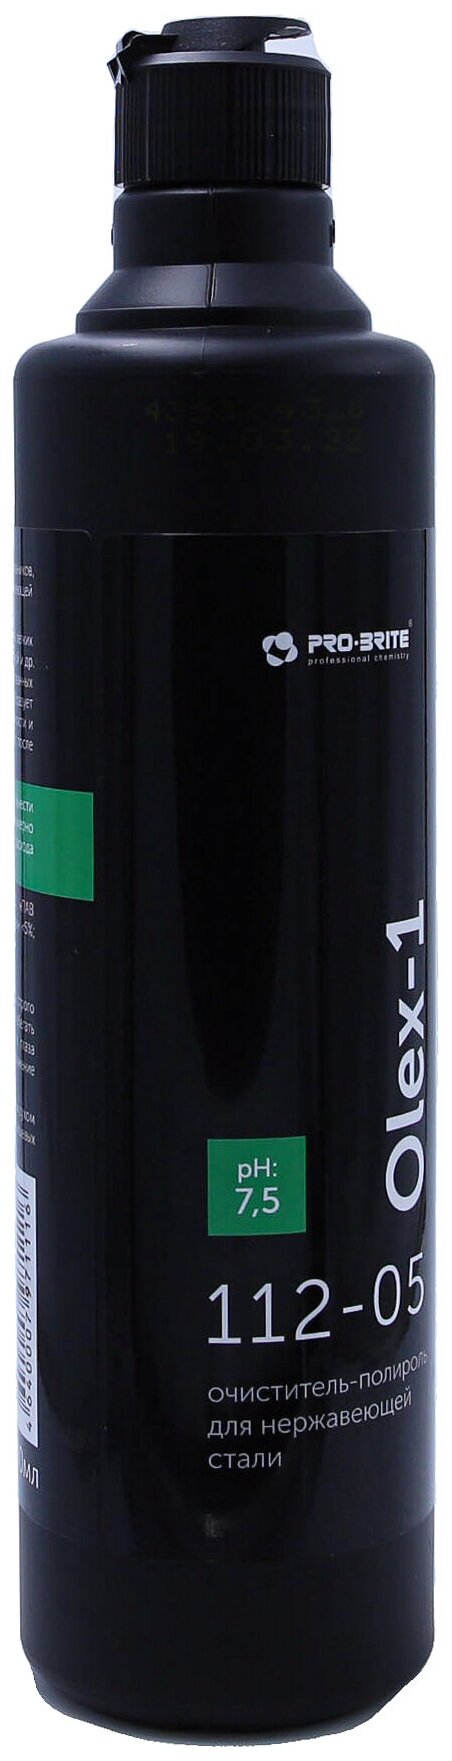 Очиститель-полироль для нержавеющей стали OLEX-1 0,5 л, средство против загрязнений и отпечатков пальцев, 5 шт. - фотография № 9